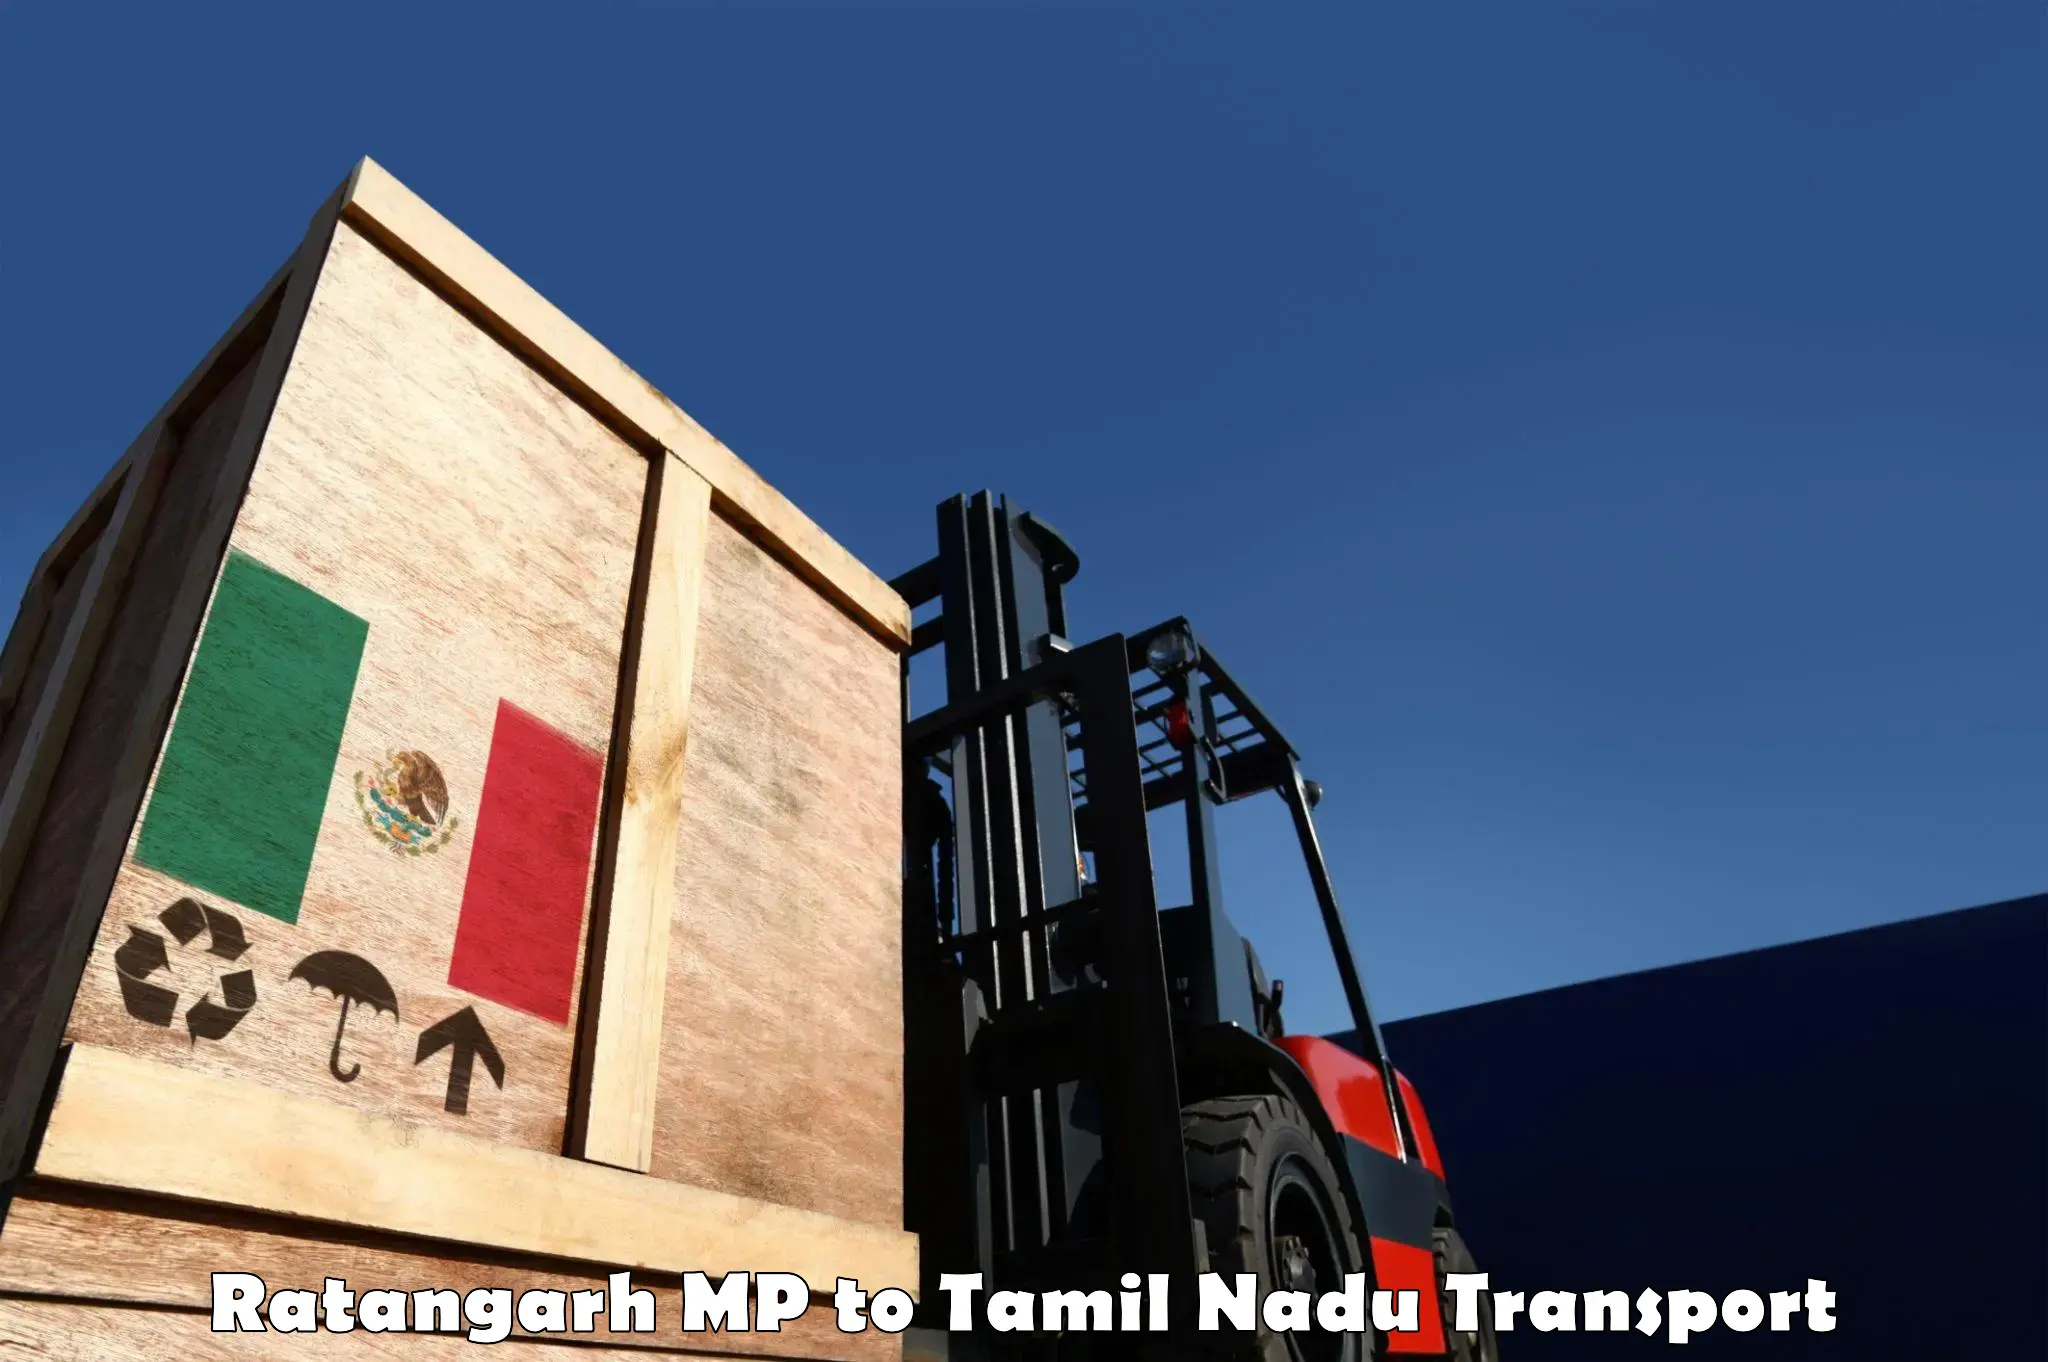 Nearest transport service Ratangarh MP to Parangimalai